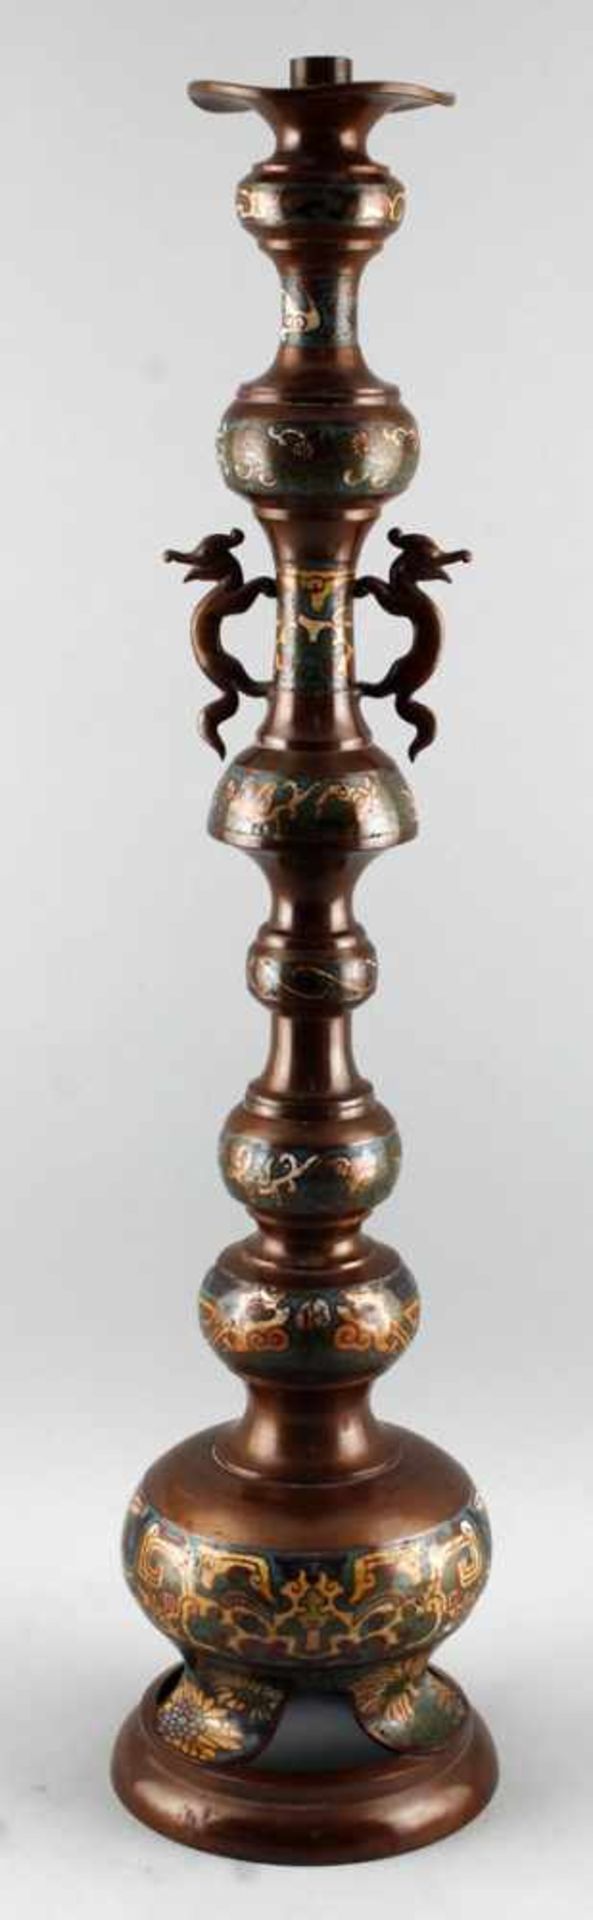 Großer Leuchter Bronze-Cloisonnéalt, Bronze oder Kupfer ?, kupferfarben, Balustersäule mit